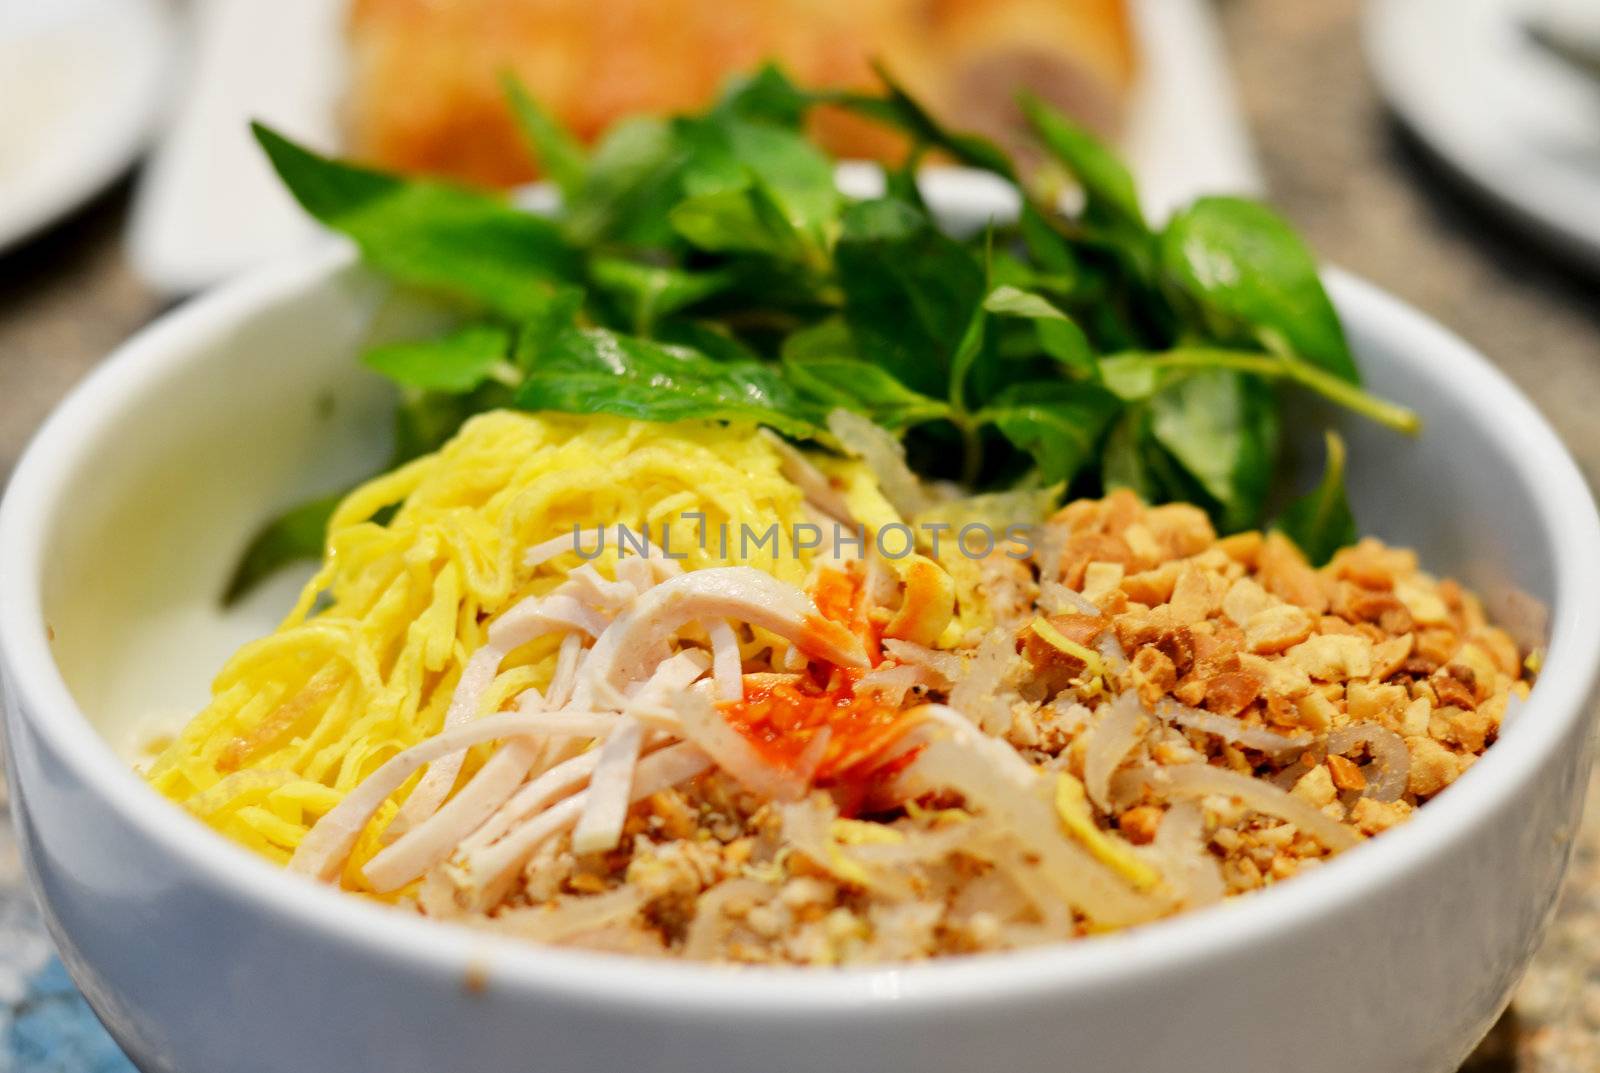  Vietnamese Food by rakratchada